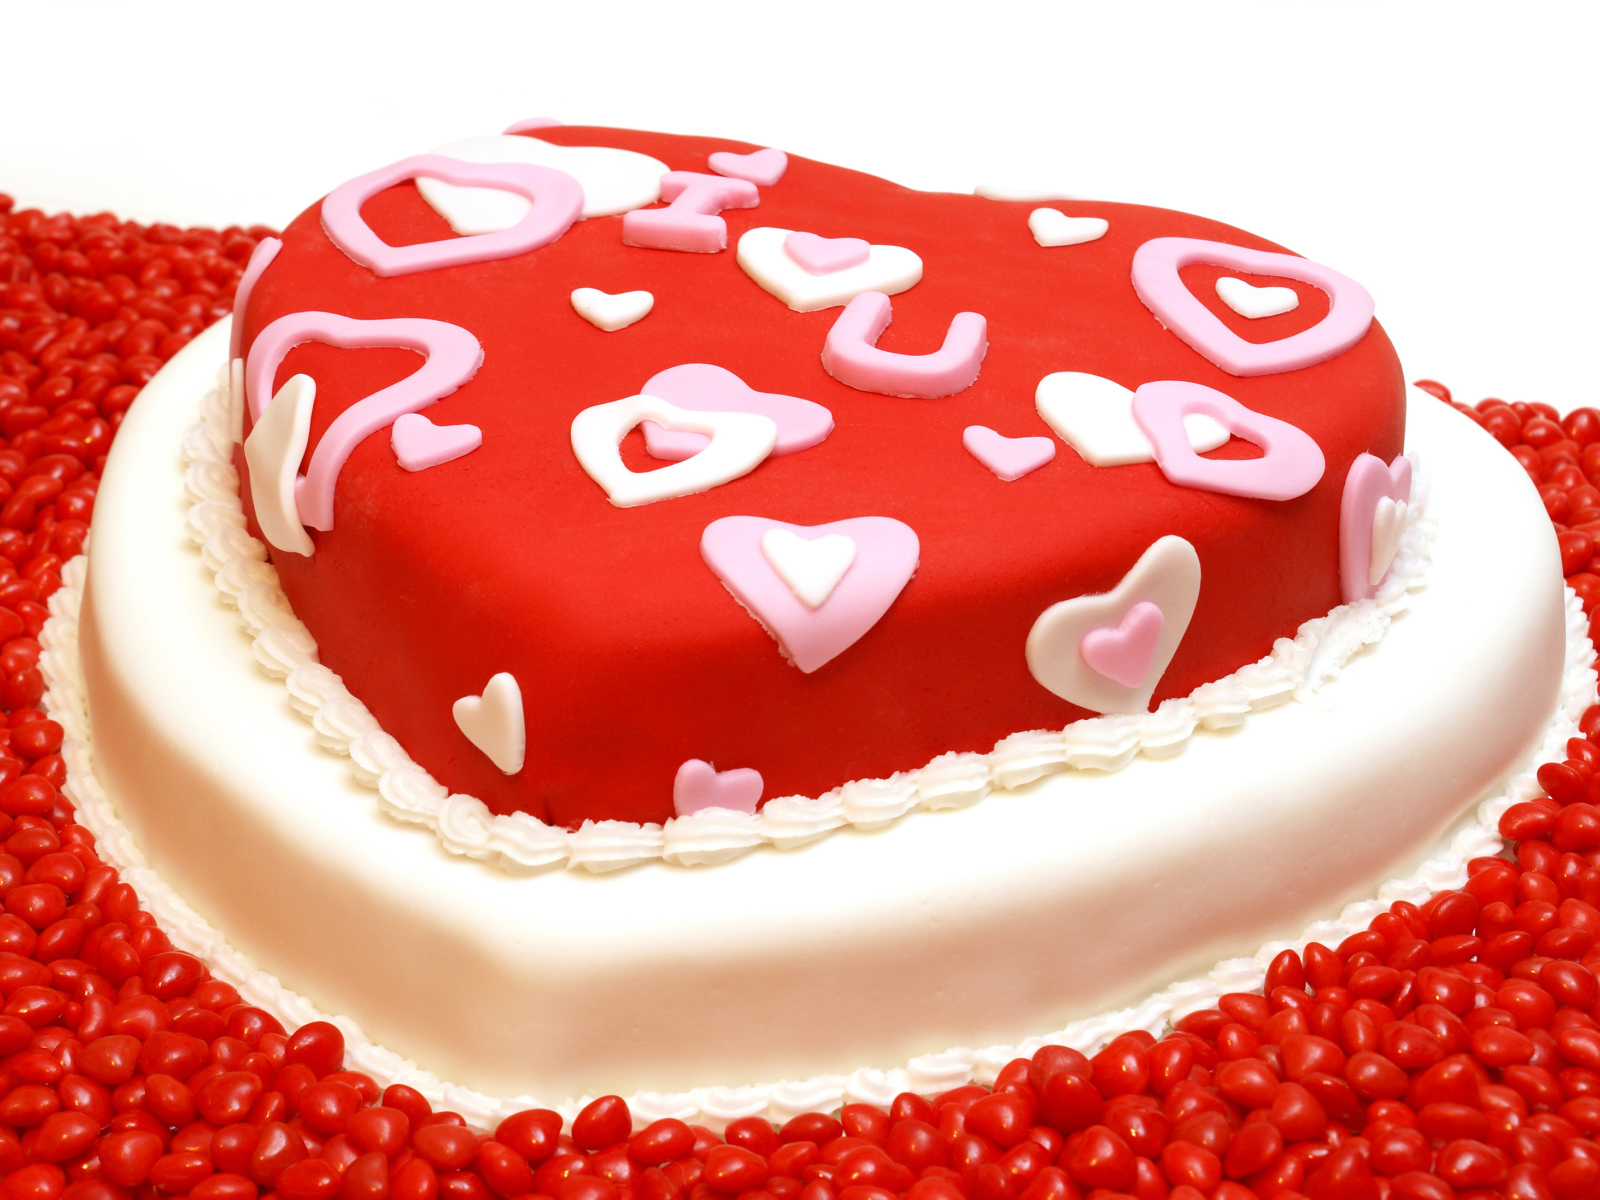 Большой красивый торт в форме сердца на День всех влюбленных 14 февраля